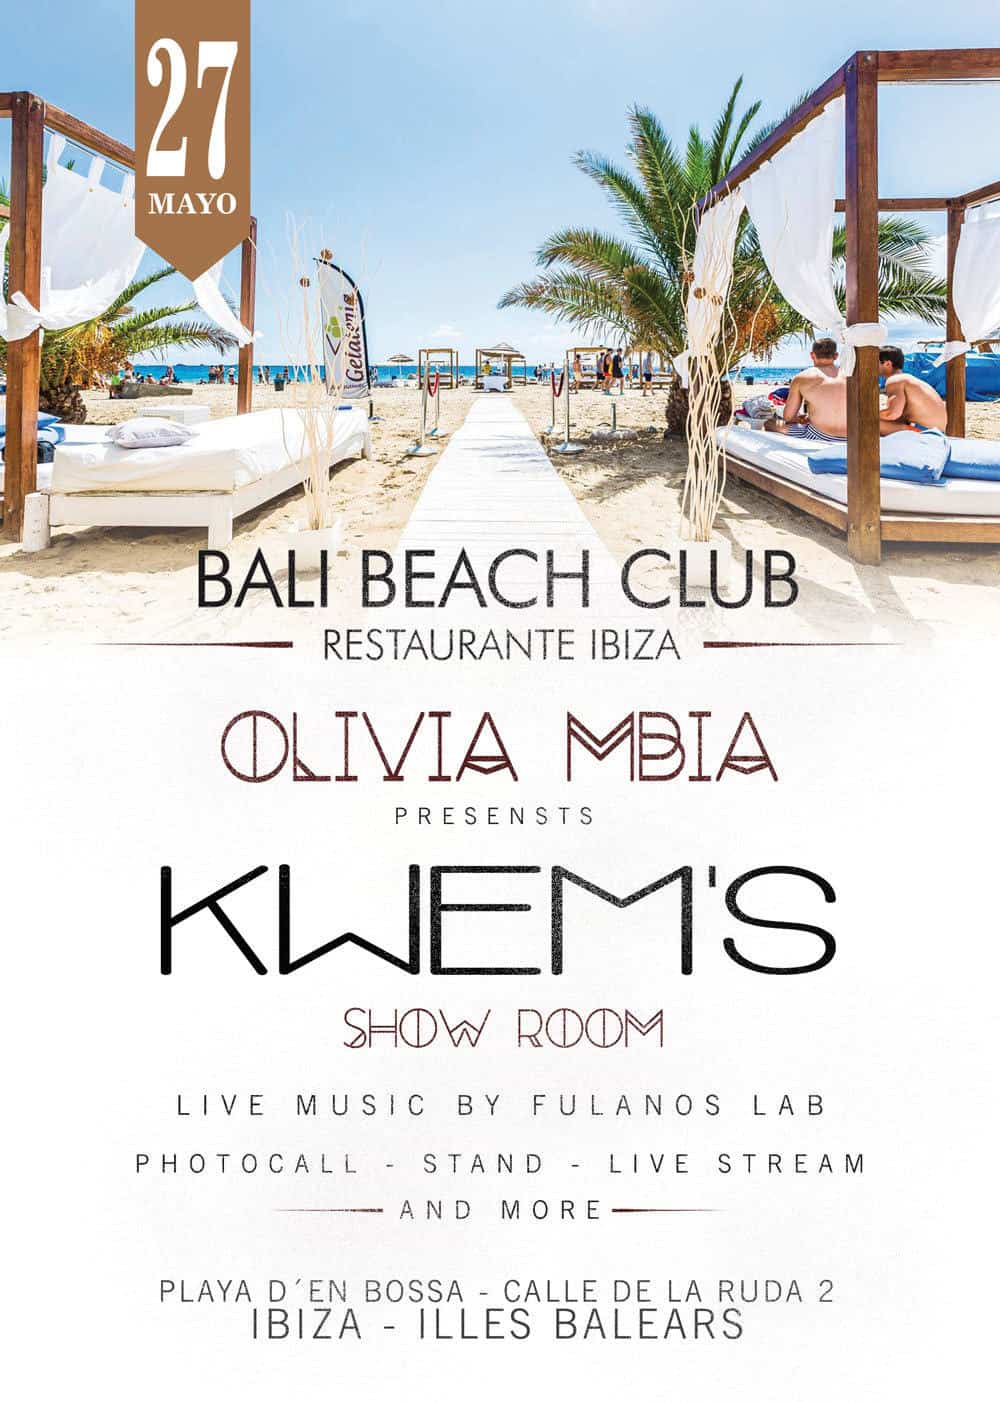 kwems-show-room-fashion-show-olivia-mbia-bali-beach-club-ibiza-welcometoibiza